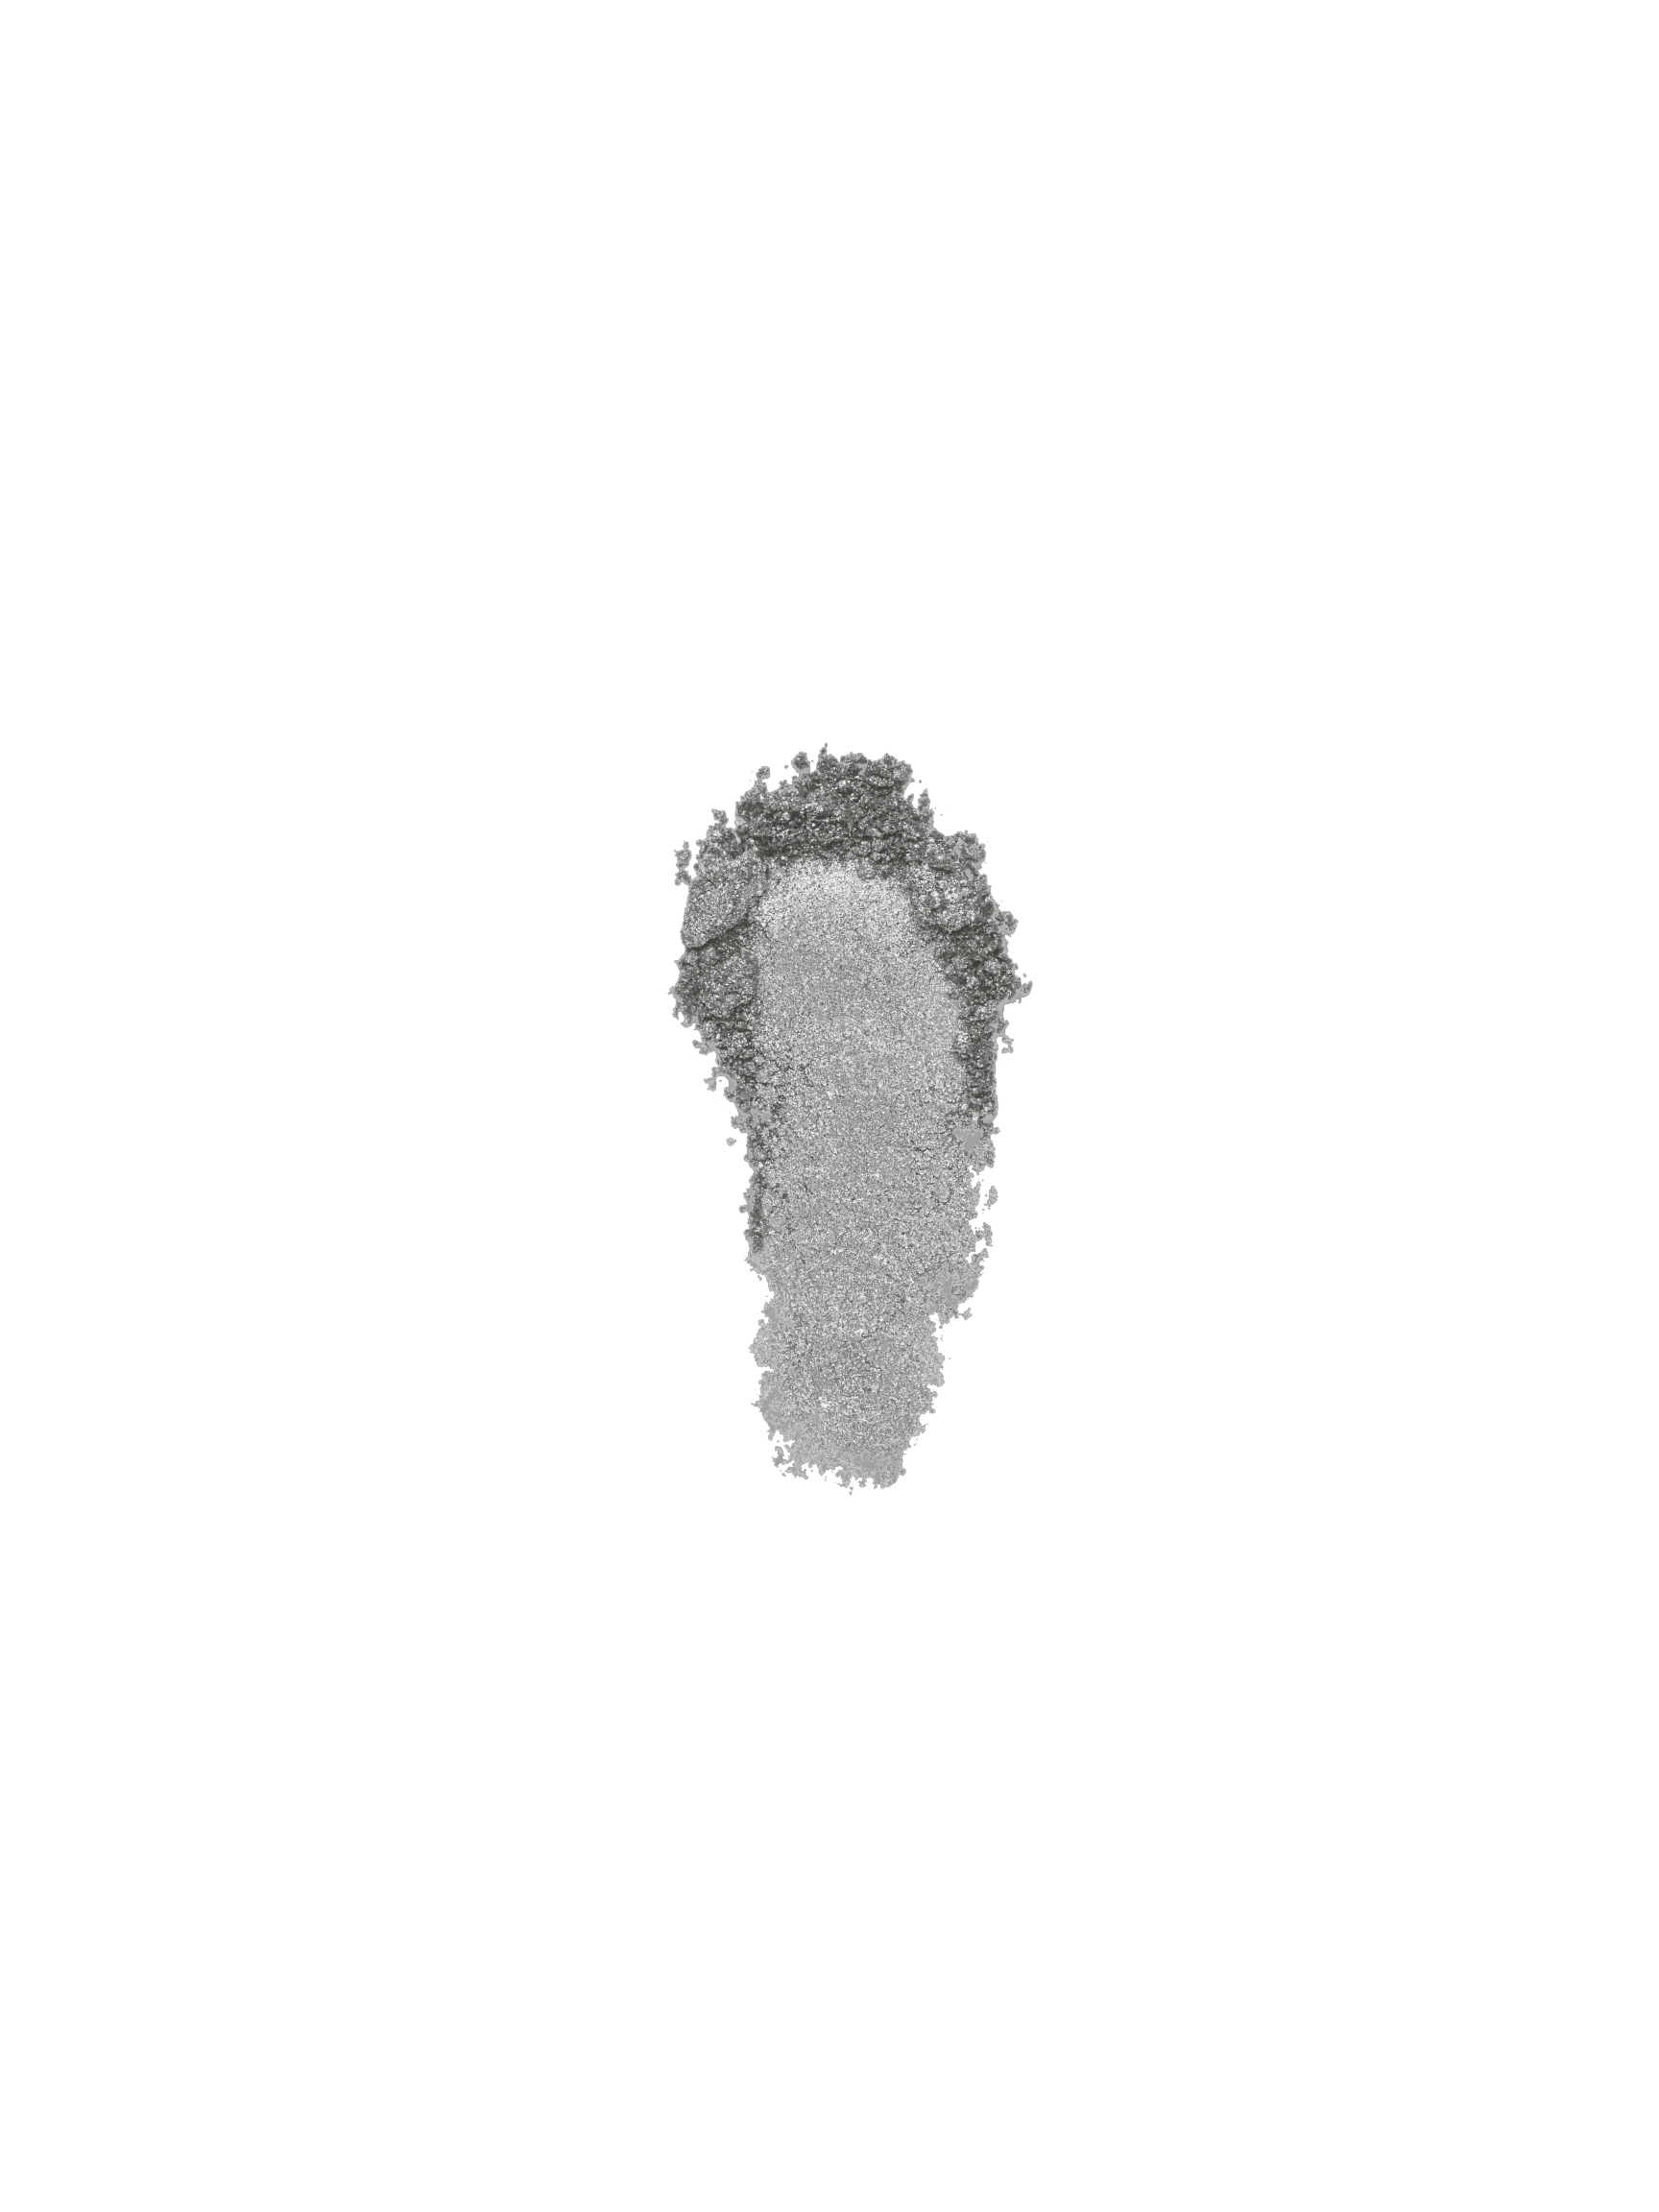 Sample of CHR-08 VVS1 Diamond Lust Dust by Notpolish